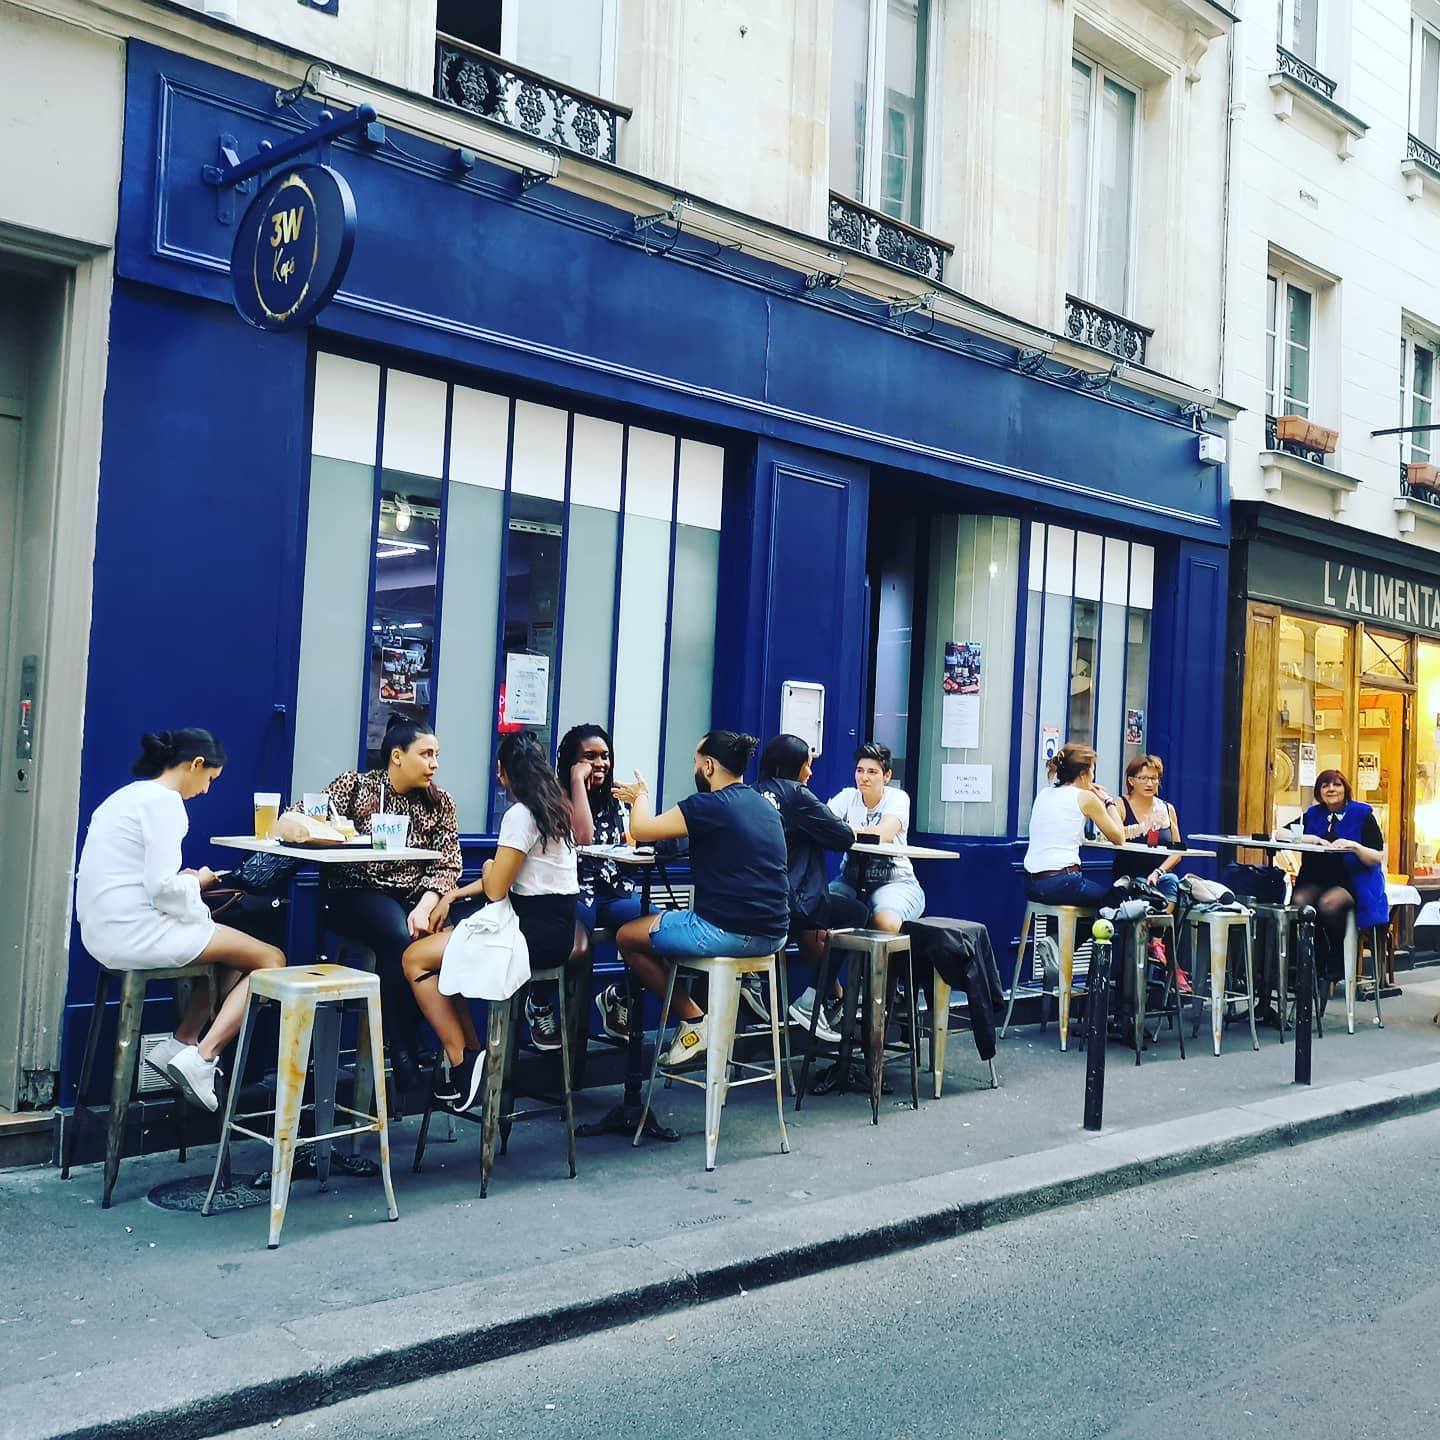 3W Kafé Paris